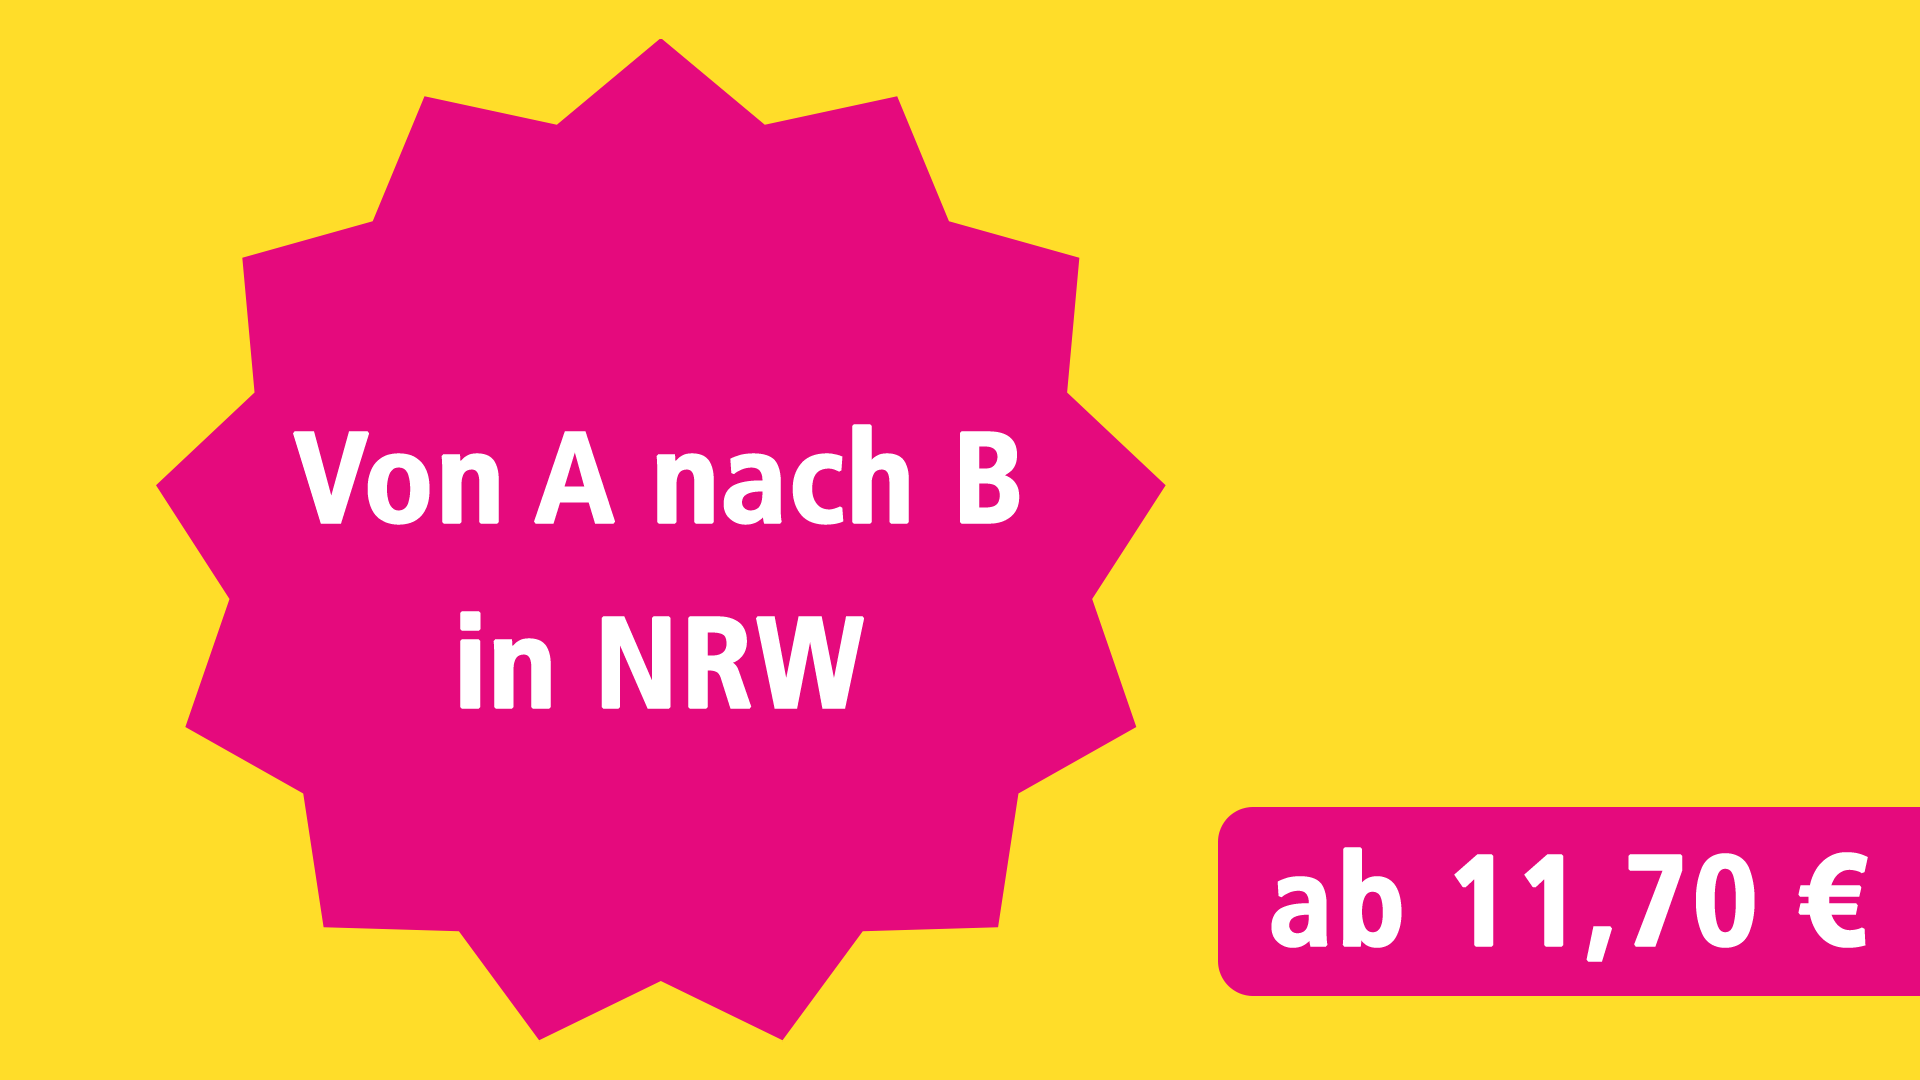 Von A nach B in NRW ab 11,70 €